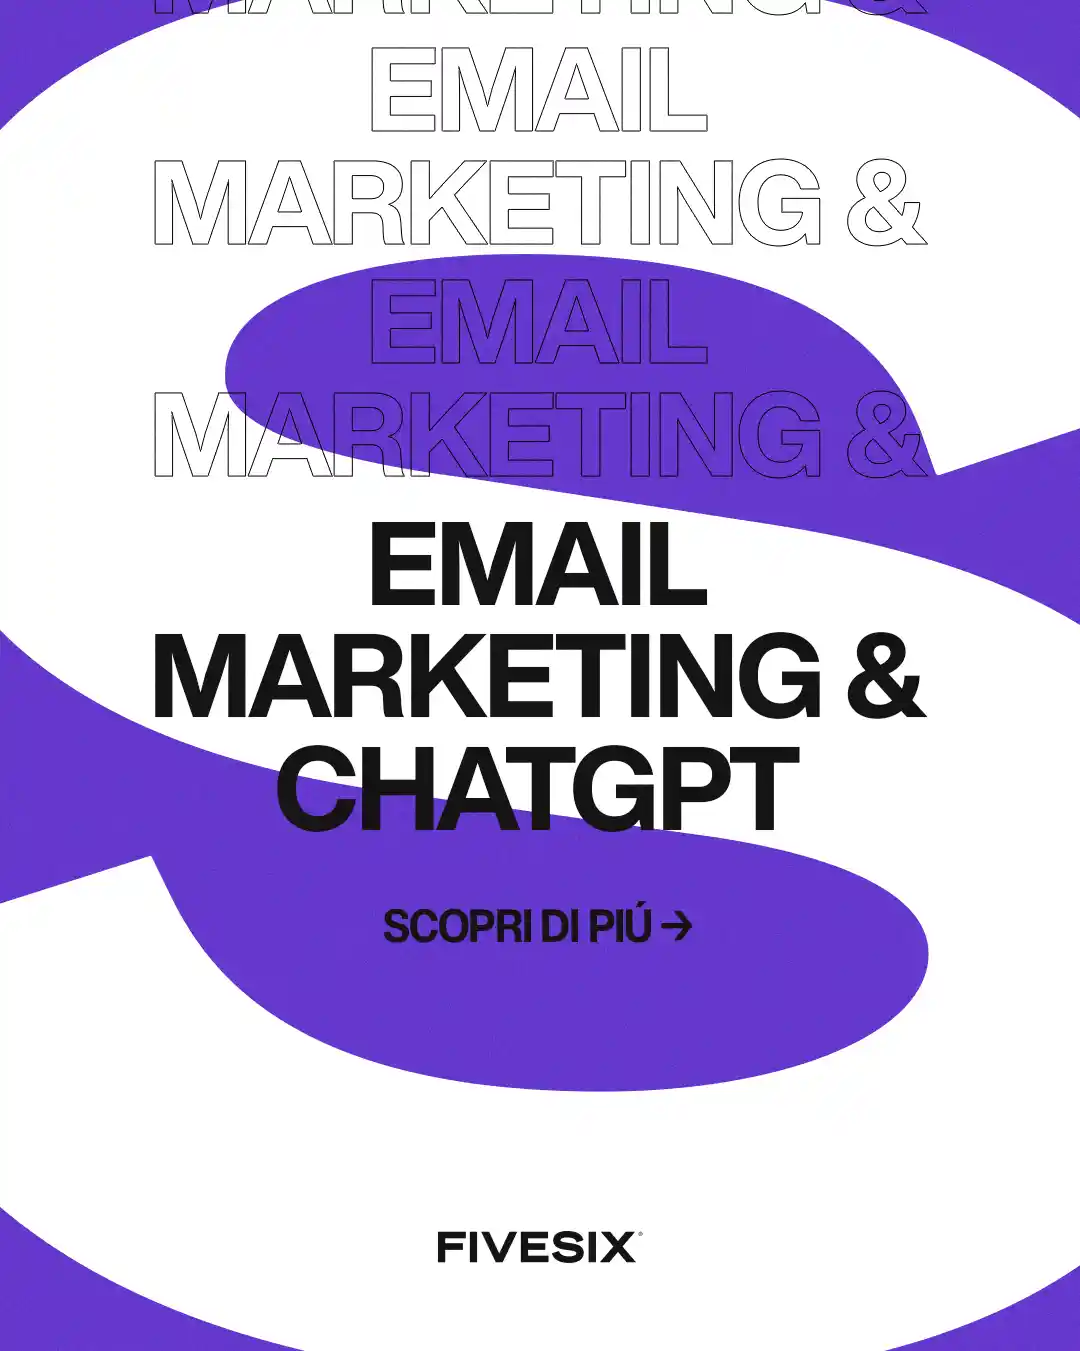 Immagine per 'Strategie di Email Marketing potenziate da ChatGPT: come scrivere email che convertono' - Fivesix Studio. Specializzati in Branding, Personal Branding, Marketing e Comunicazione.